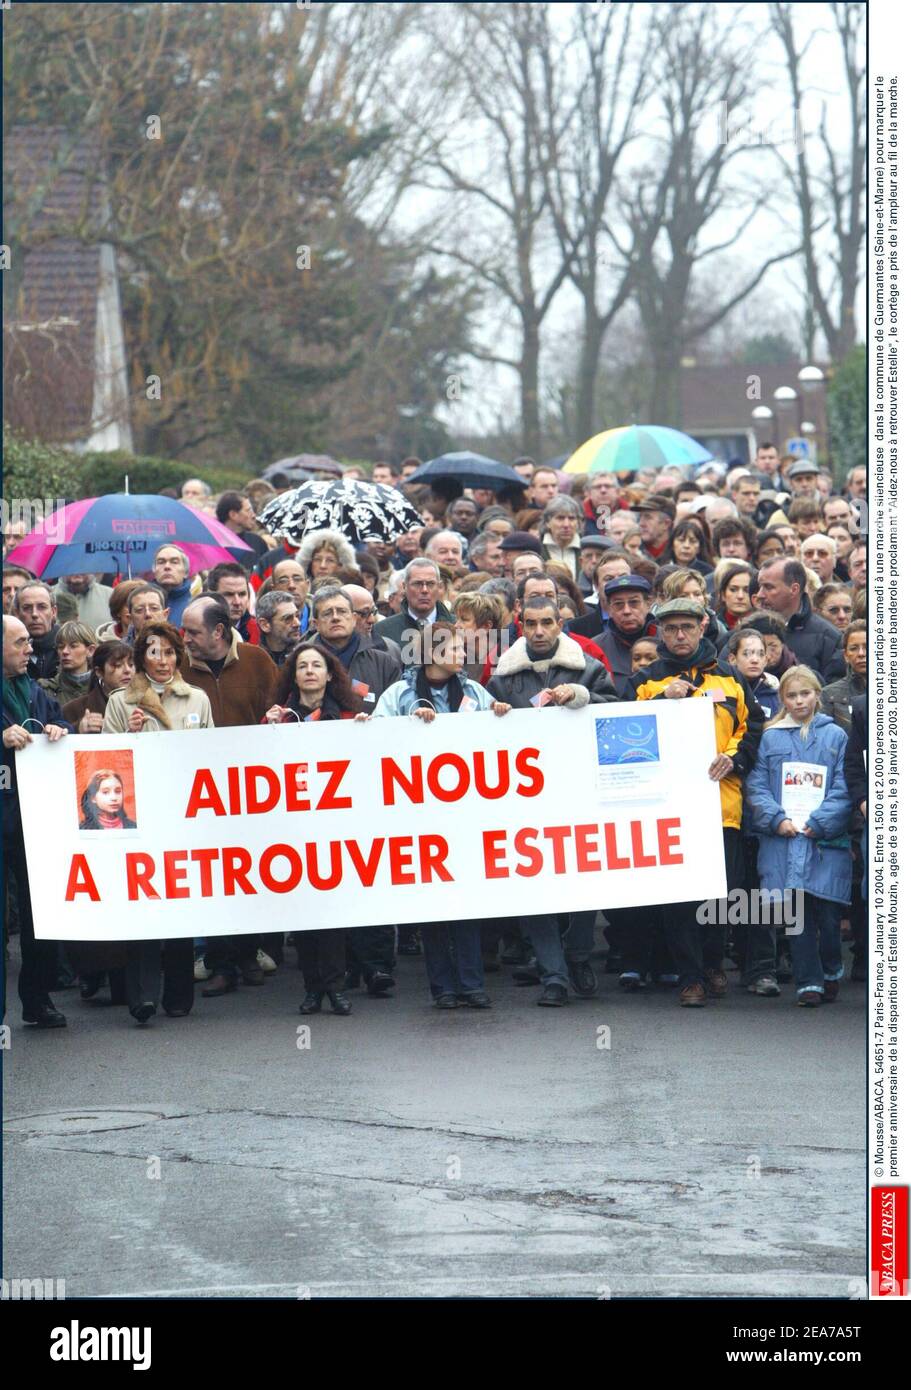 © Mousse/ABACA. 54651-7. Paris-France, January 10 2004. Entre 1.500 et 2.000 personnes ont particip samedi ˆ une marche silencieuse dans la commune de Guermantes (Seine-et-Marne) pour marquer le premier anniversaire de la disparition d'Estelle Mouzin, age de 9 ans, le 9 janvier 2003. Derrire une banderole proclamant Aidez-nous ˆ retrouver Estelle, le cortge a pris de l'ampleur au fil de la marche. Stock Photo